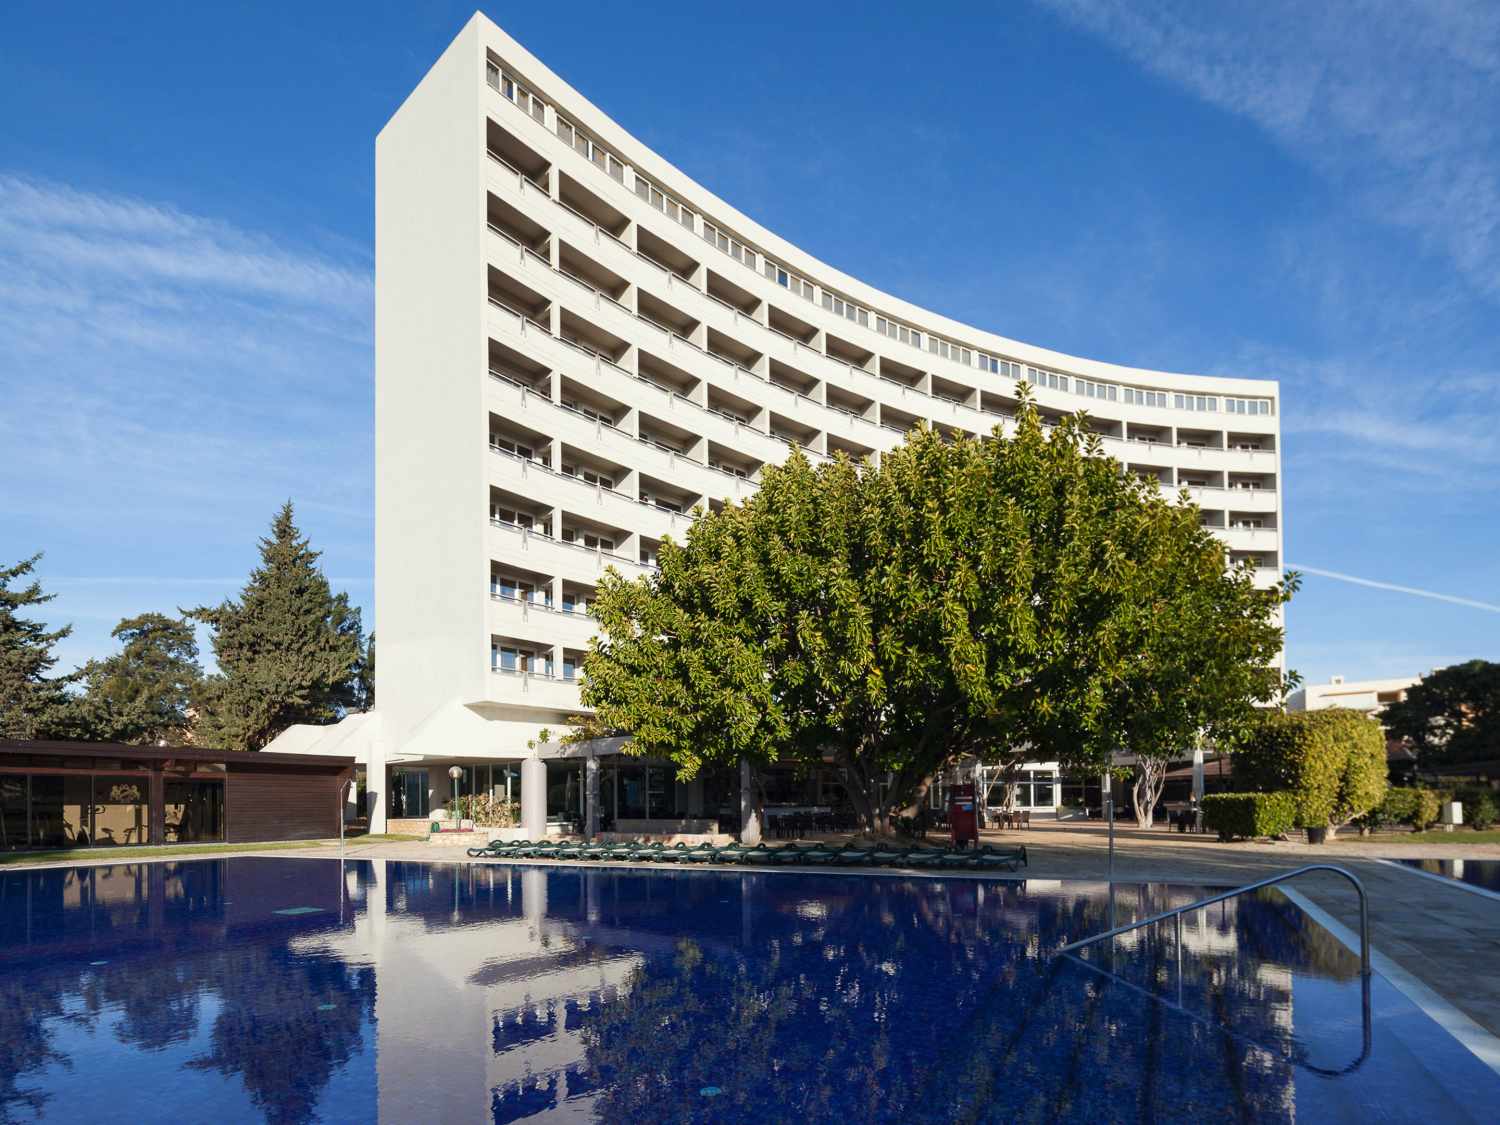 Dom Pedro Vilamoura Hotel Resort & Golf, Quarteira, Algarve, Portugal